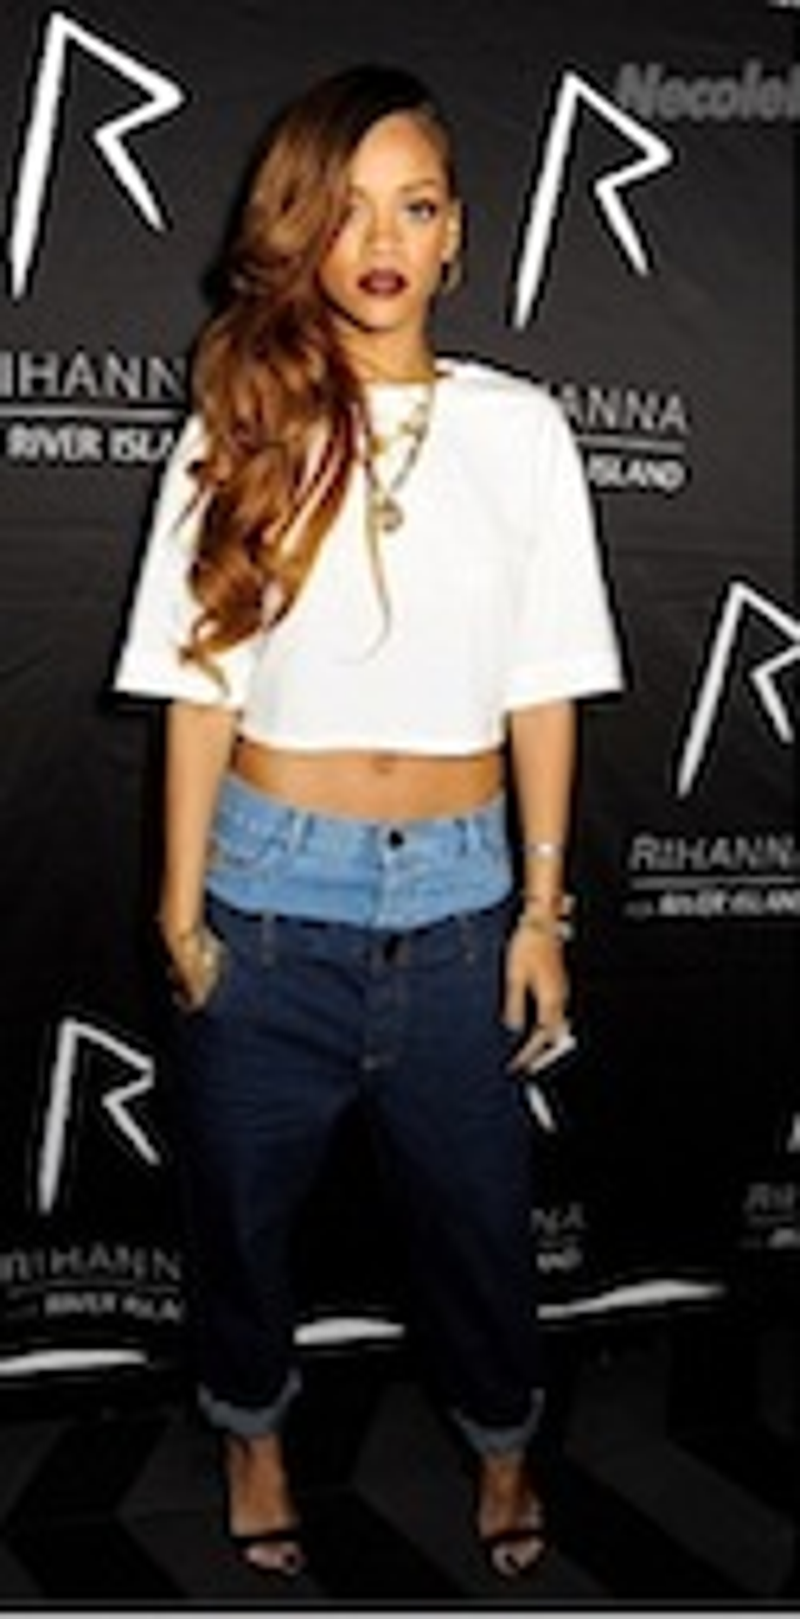 RihannaRivIslandSumm.jpg